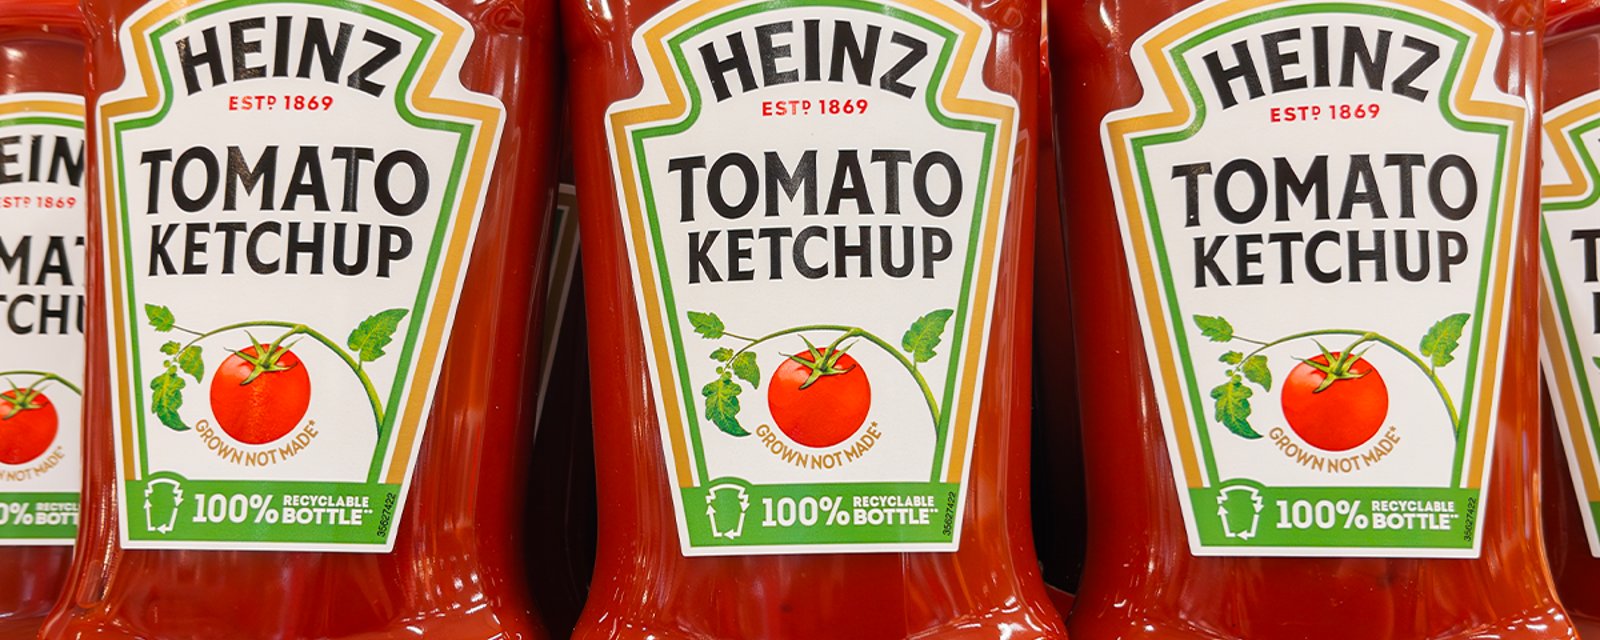 Le ketchup va-t-il dans le frigo ou dans l'armoire? Heinz tranche finalement sur la fameuse question 